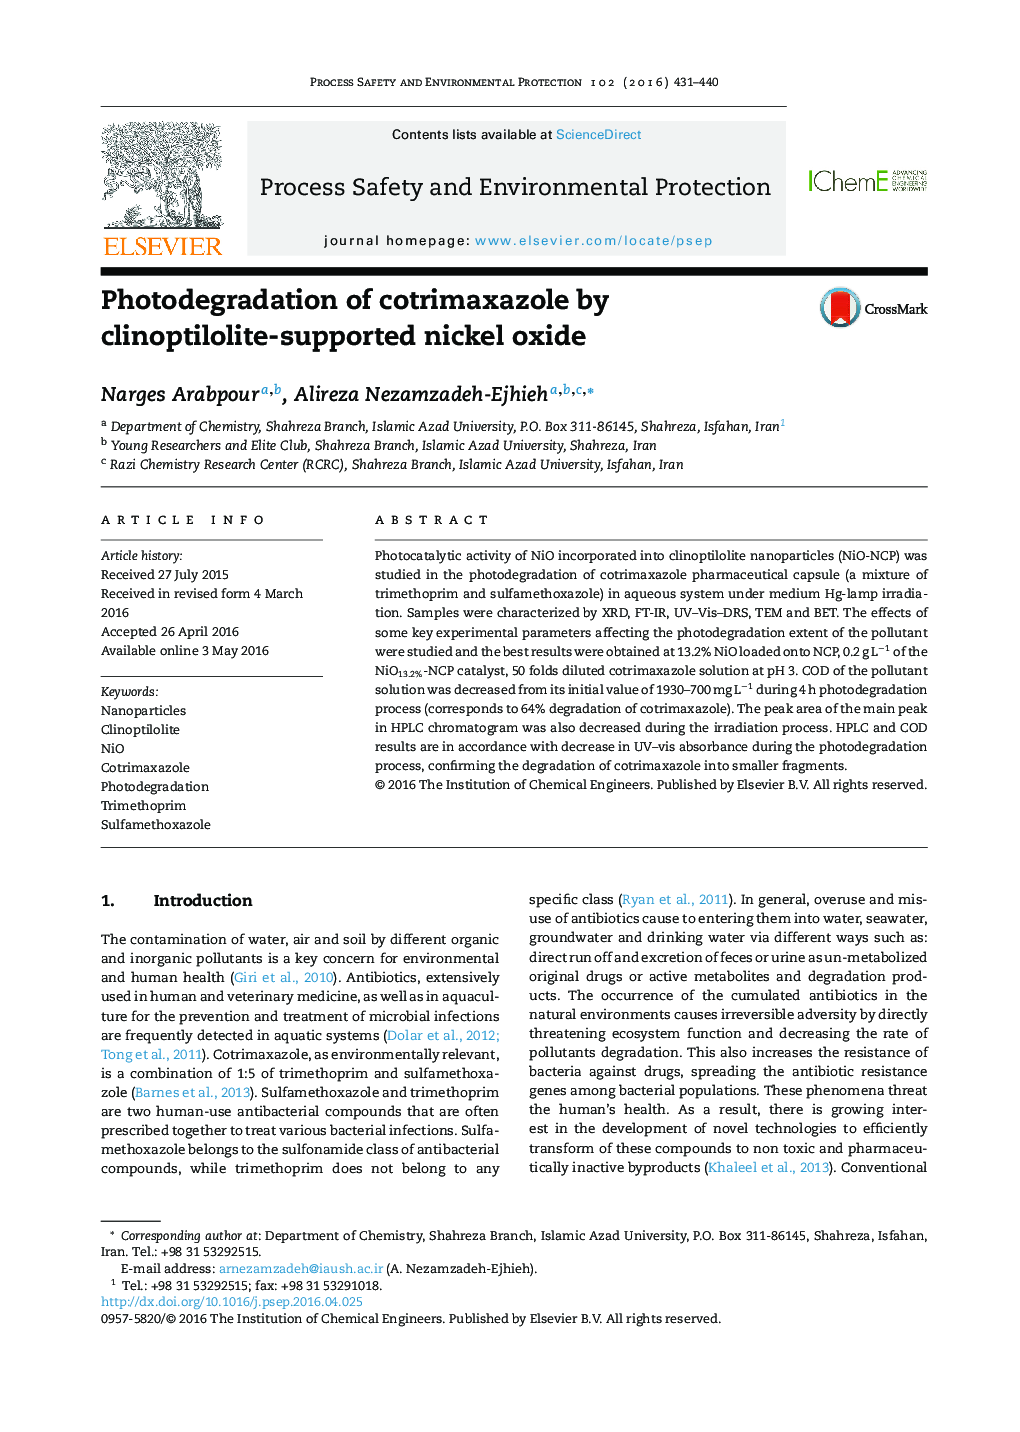 تخریب نوری کوتریموکسازول توسط اکسید نیکل با پشتیبانی کلینوپتیلولیت 